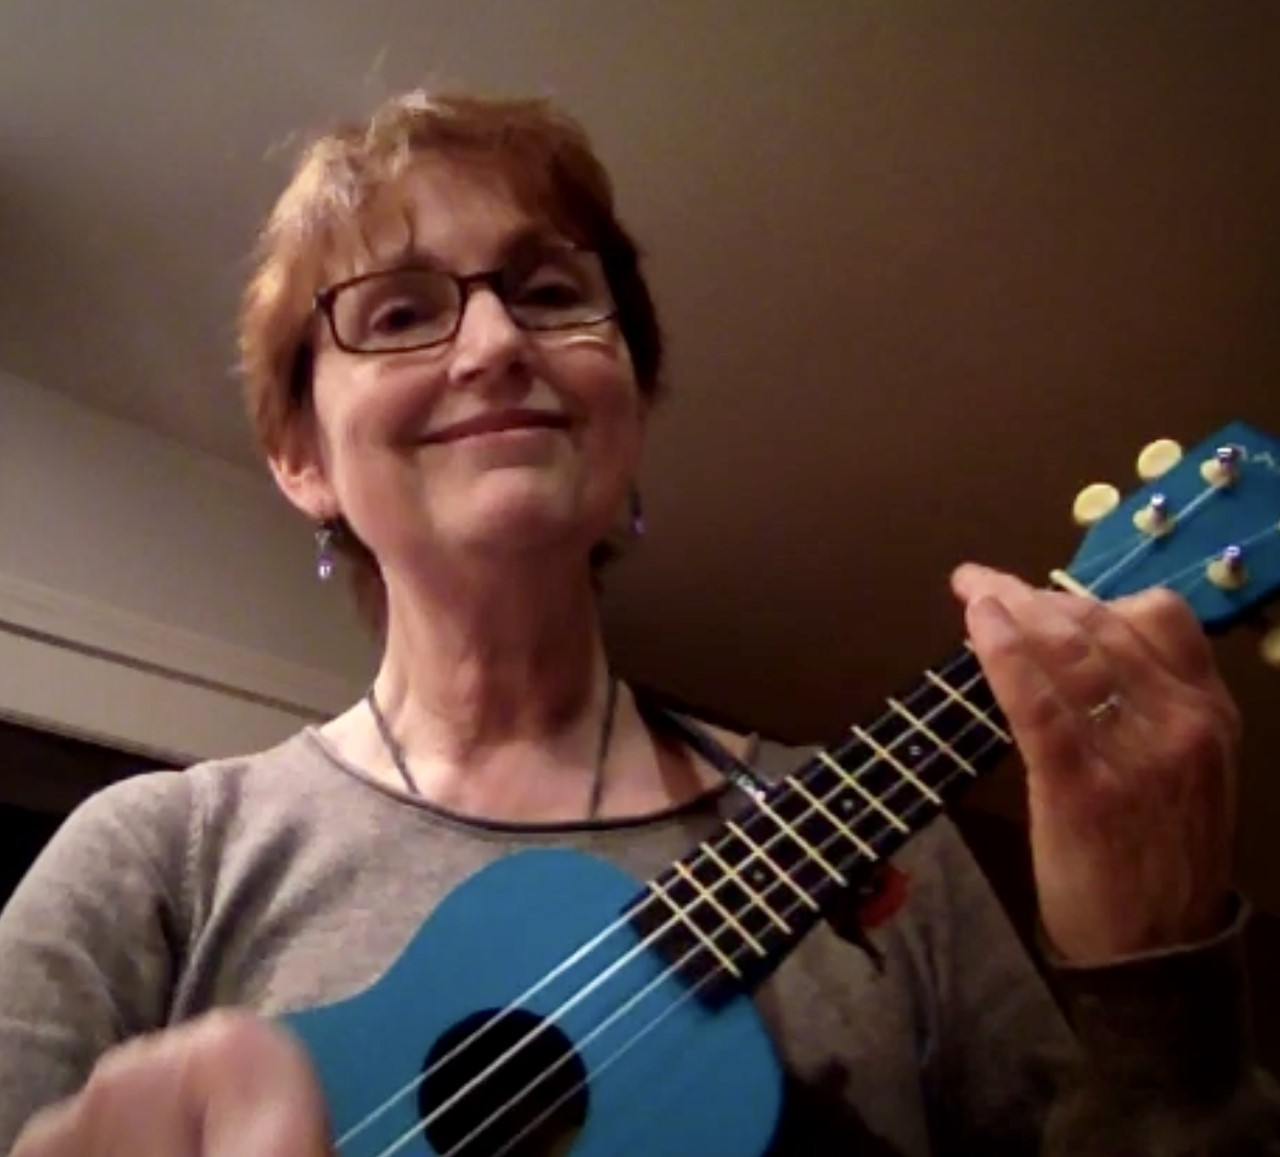 Bettina plays an ukulele